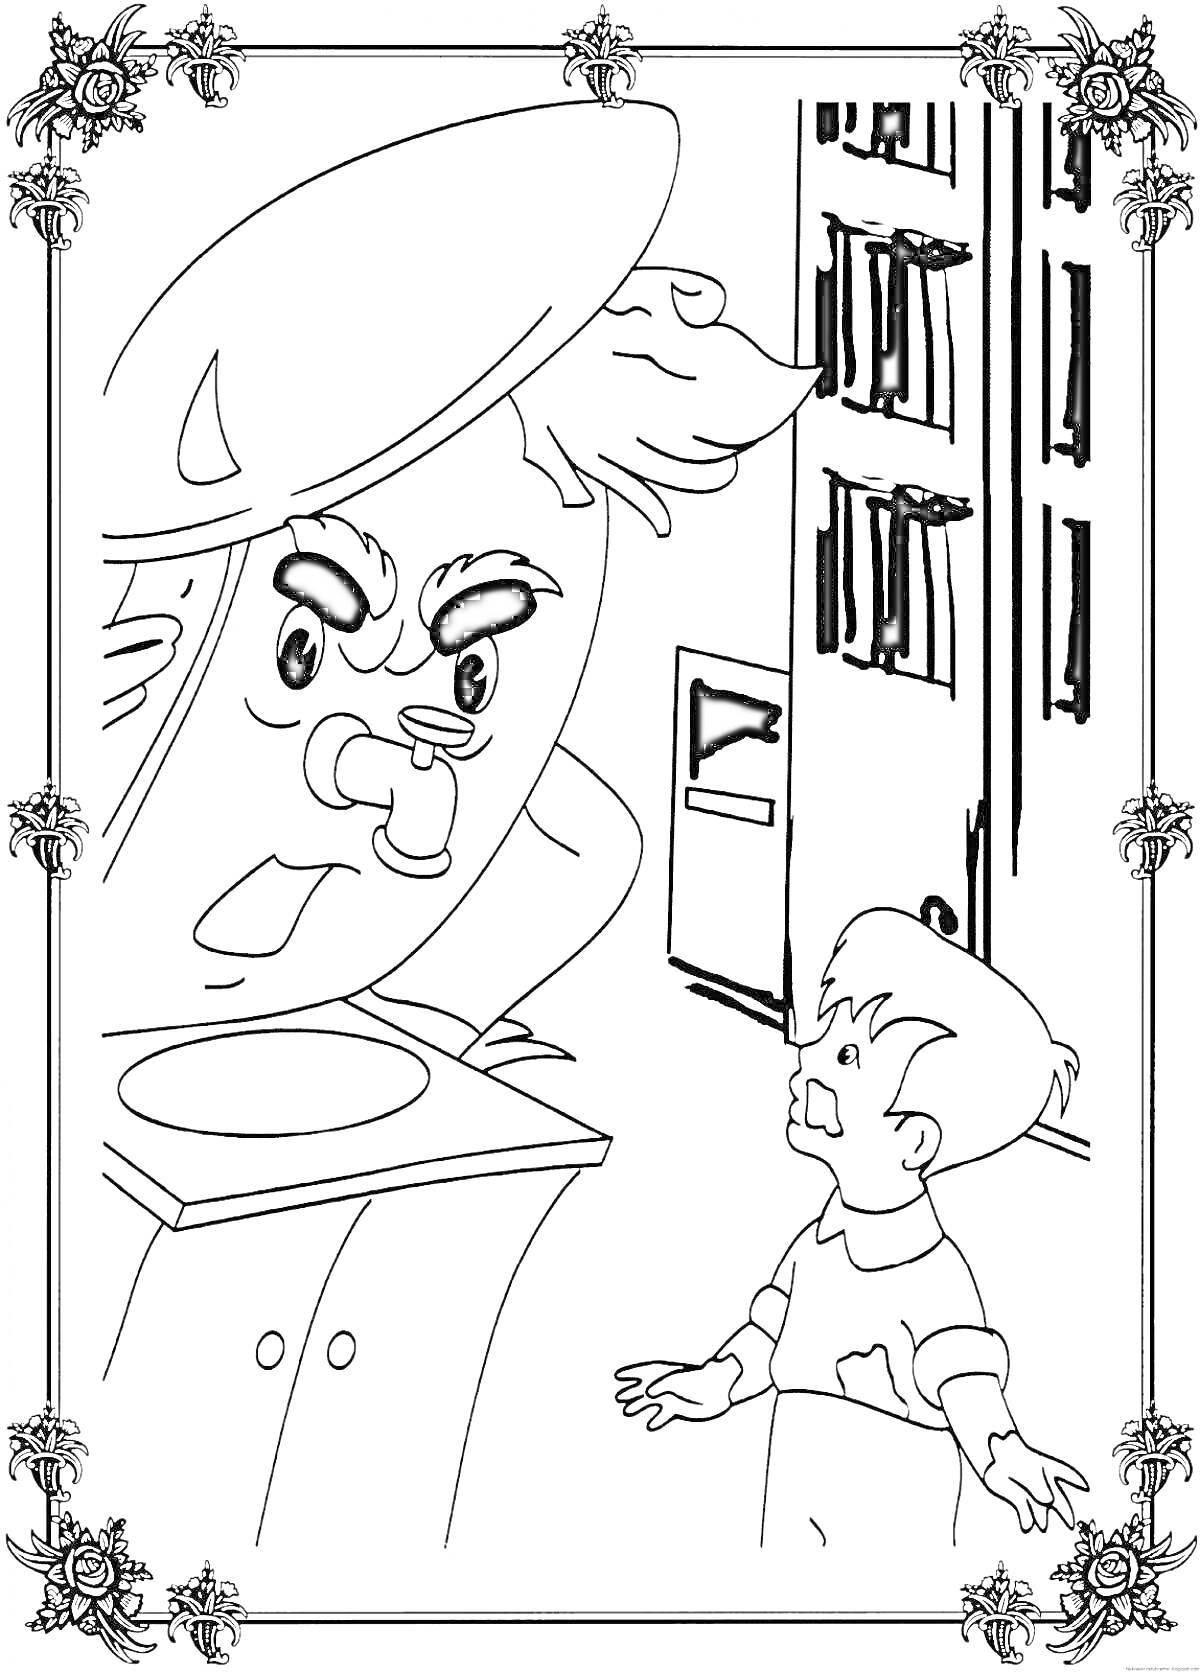 Раскраска Разговор мойдодыра с мальчиком на кухне